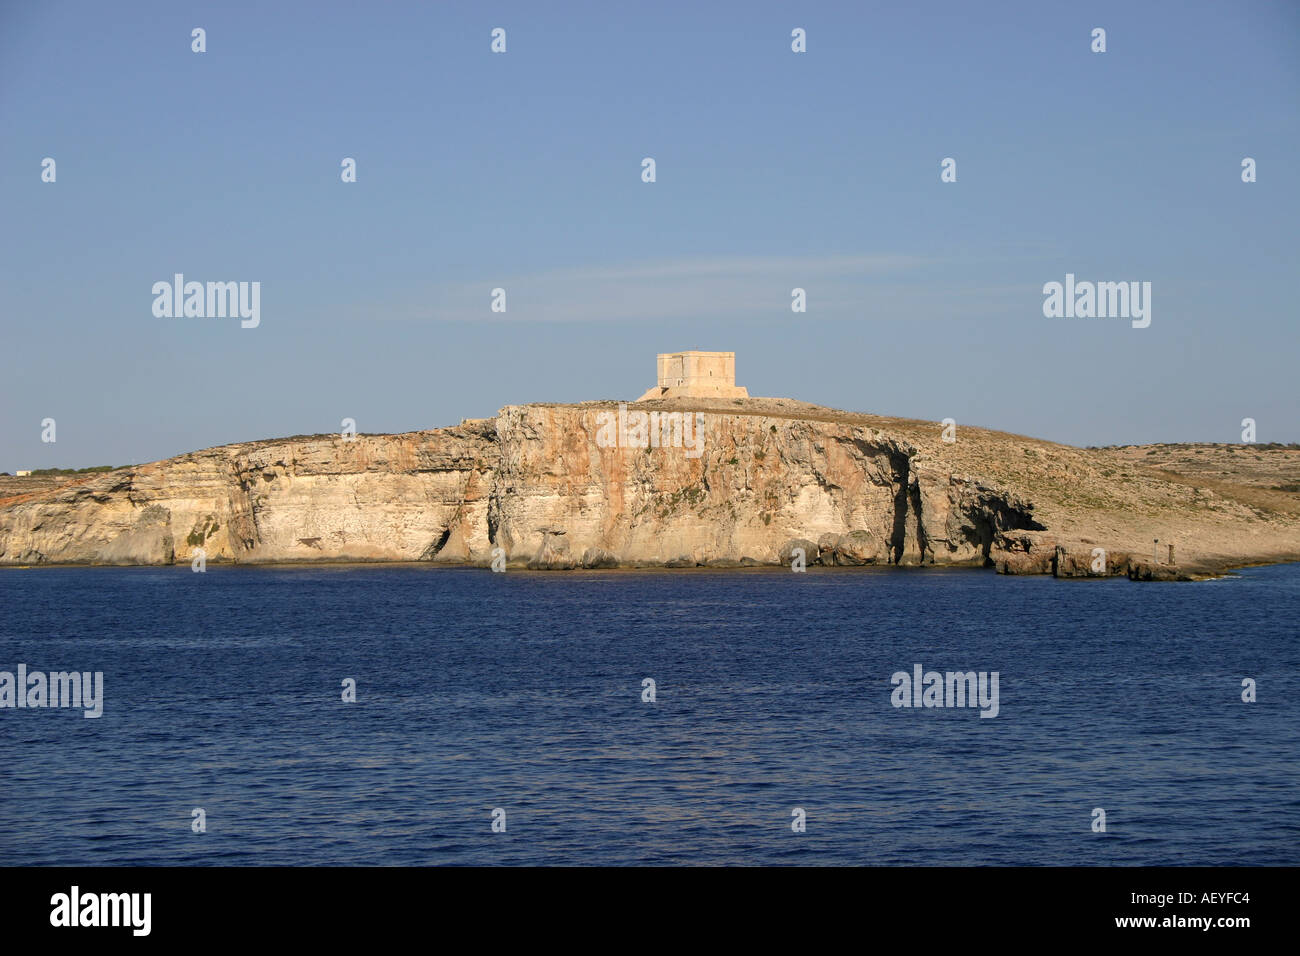 Malta Comino Insel Island Stock Photo